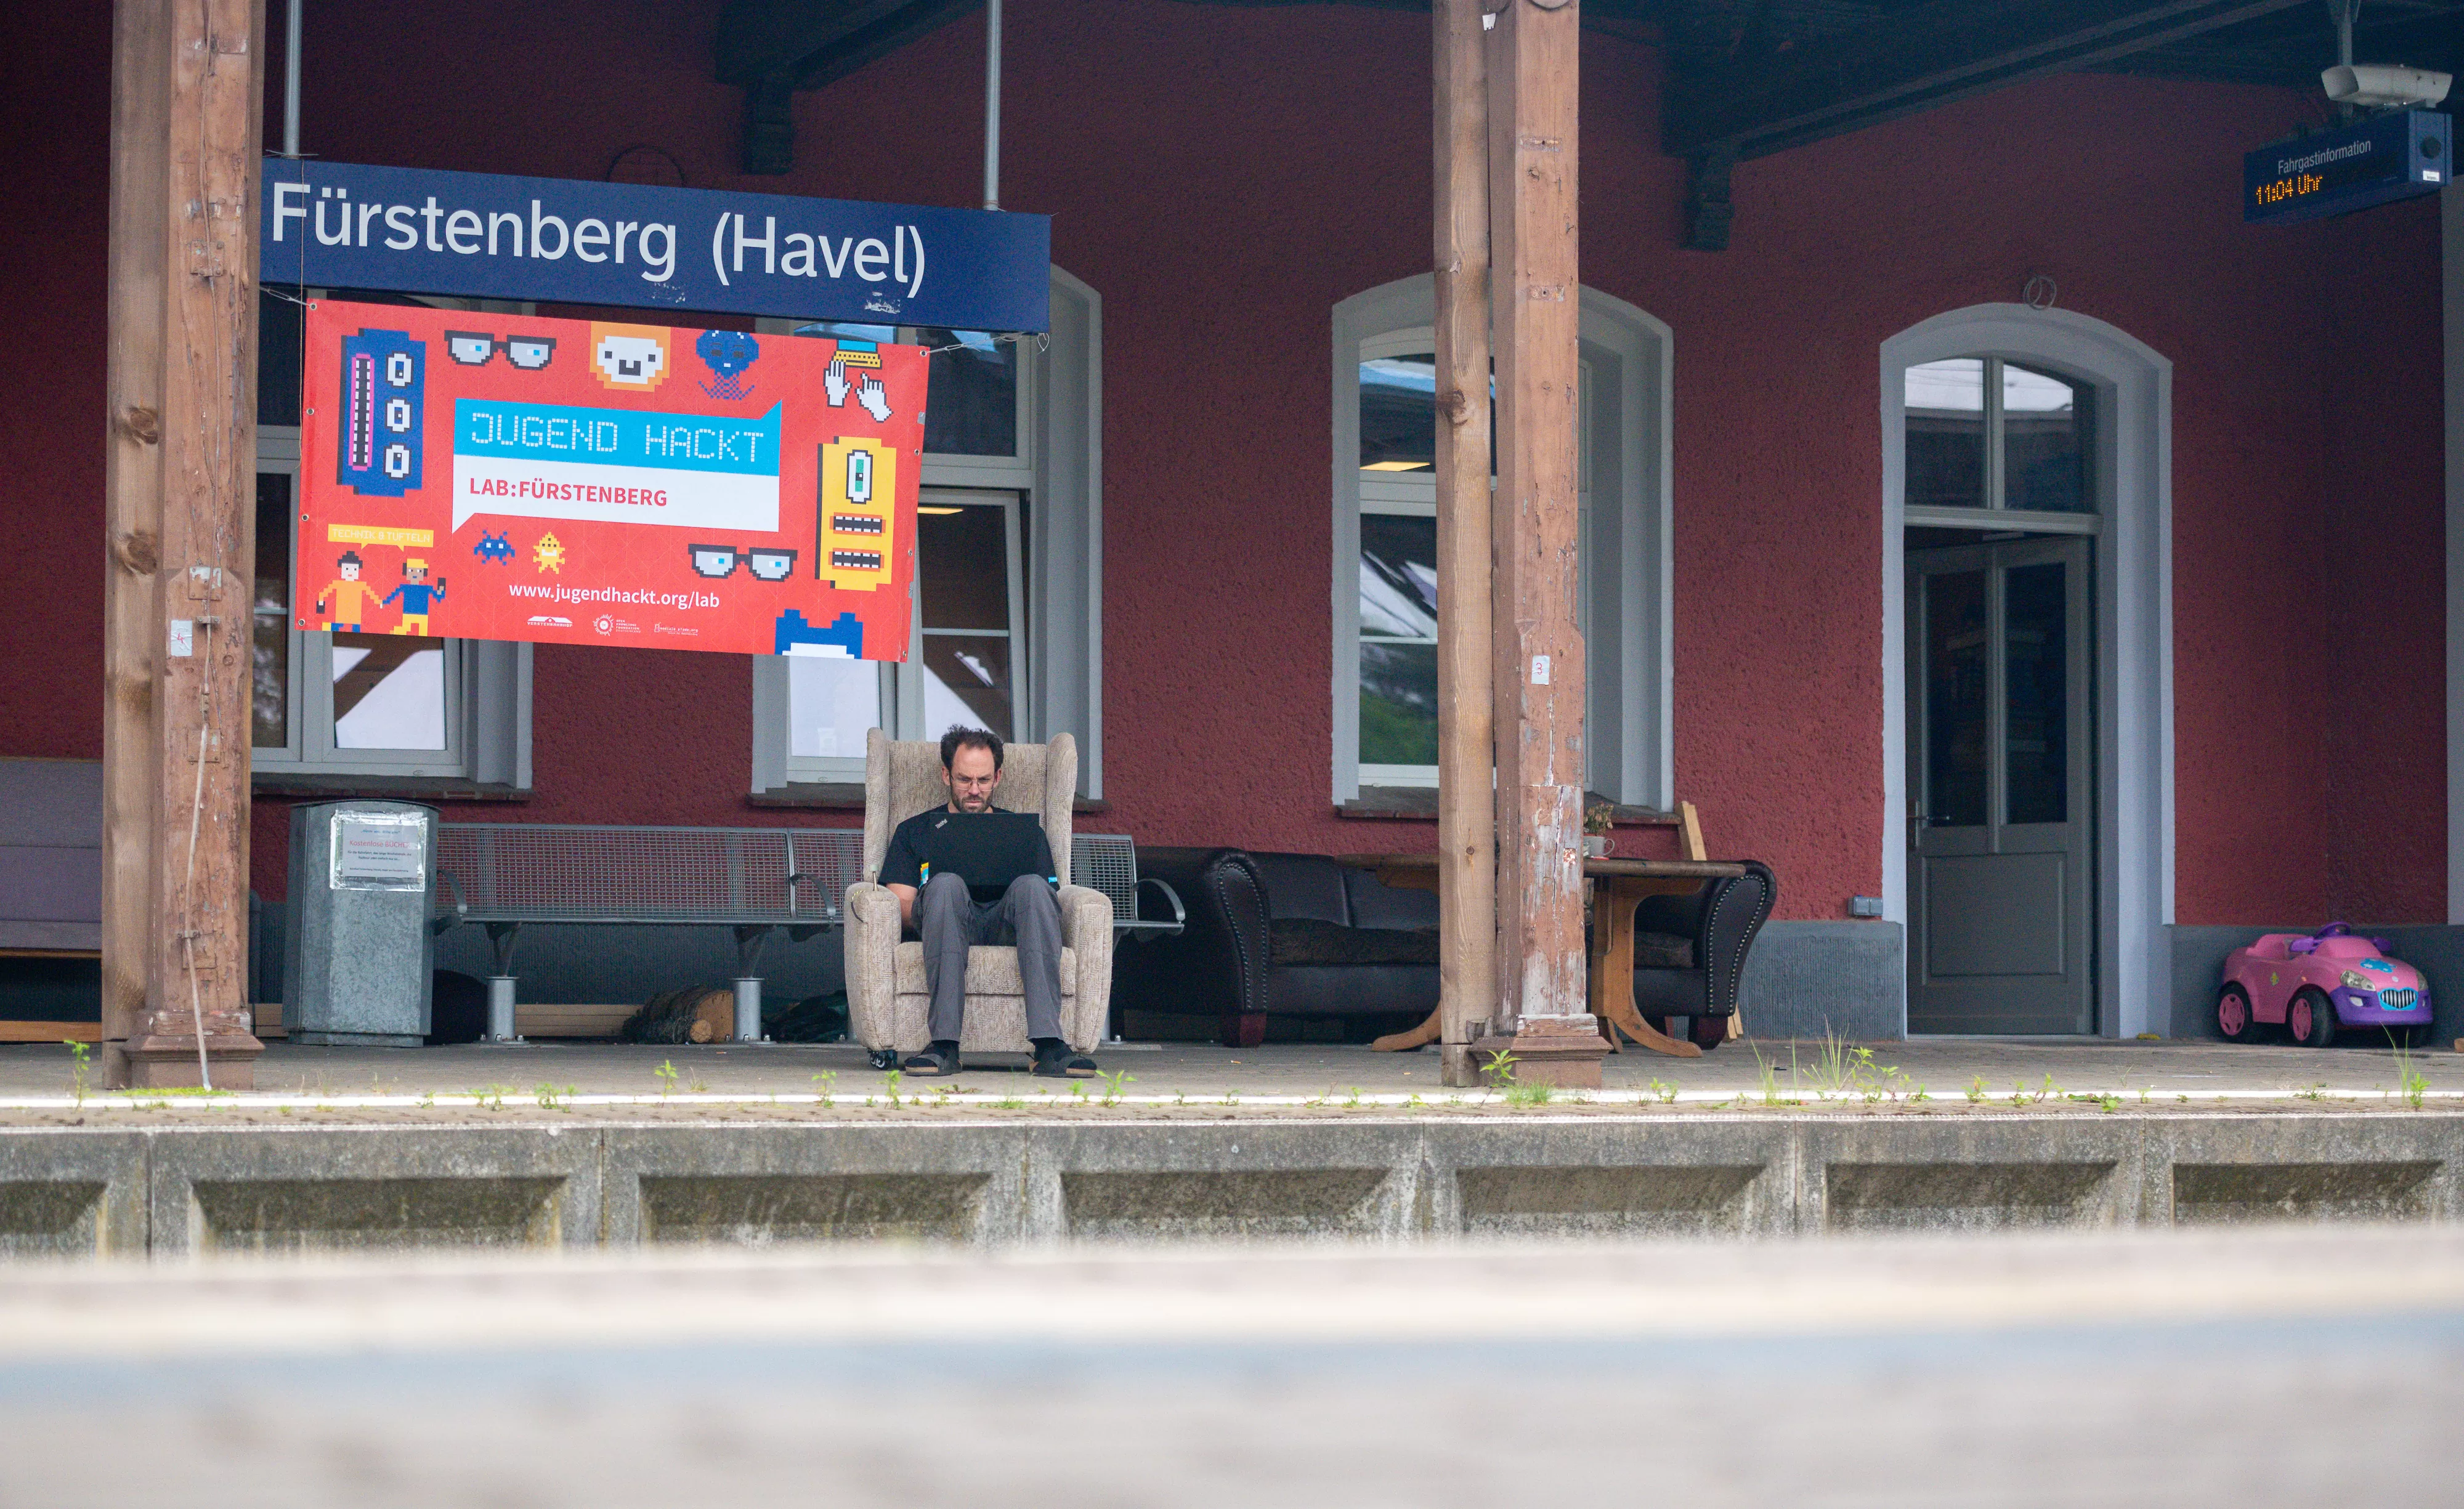 Daniel-Domscheit-Berg sitzt mit einem Laptop auf den Knien auf einem alten Sessel am Gleis des Bahnhofs, dem heutigen Verstehbahnhof. Unter dem Bahnhofsschild mit der aufschrift "Fürstenberg/Havel" ist noch ein großes Schild mit der Aufschrift "Jugend hackt".